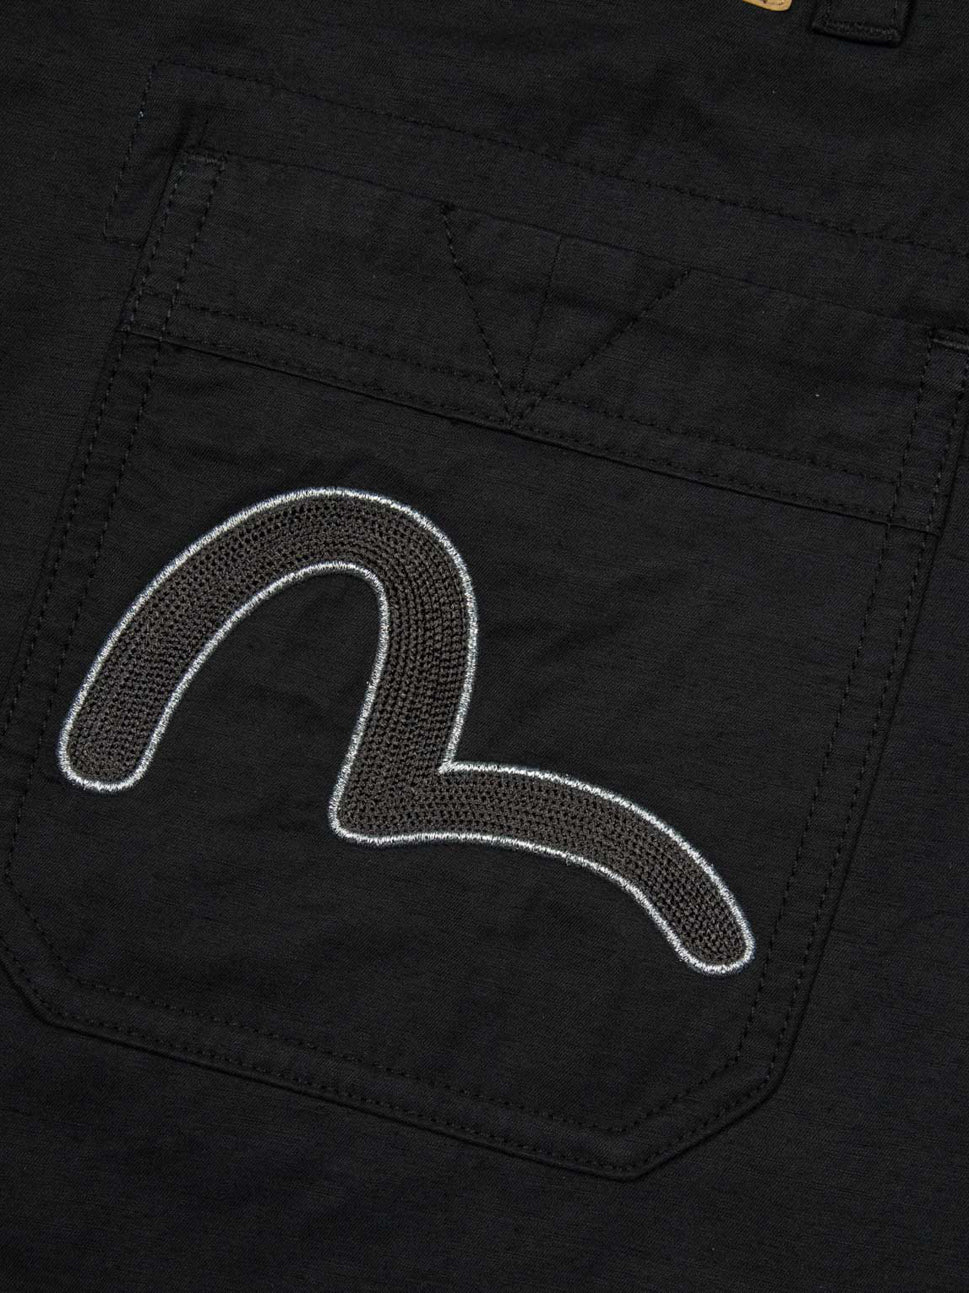 Evisu Seagull Embroidery And Kamon Print Pants